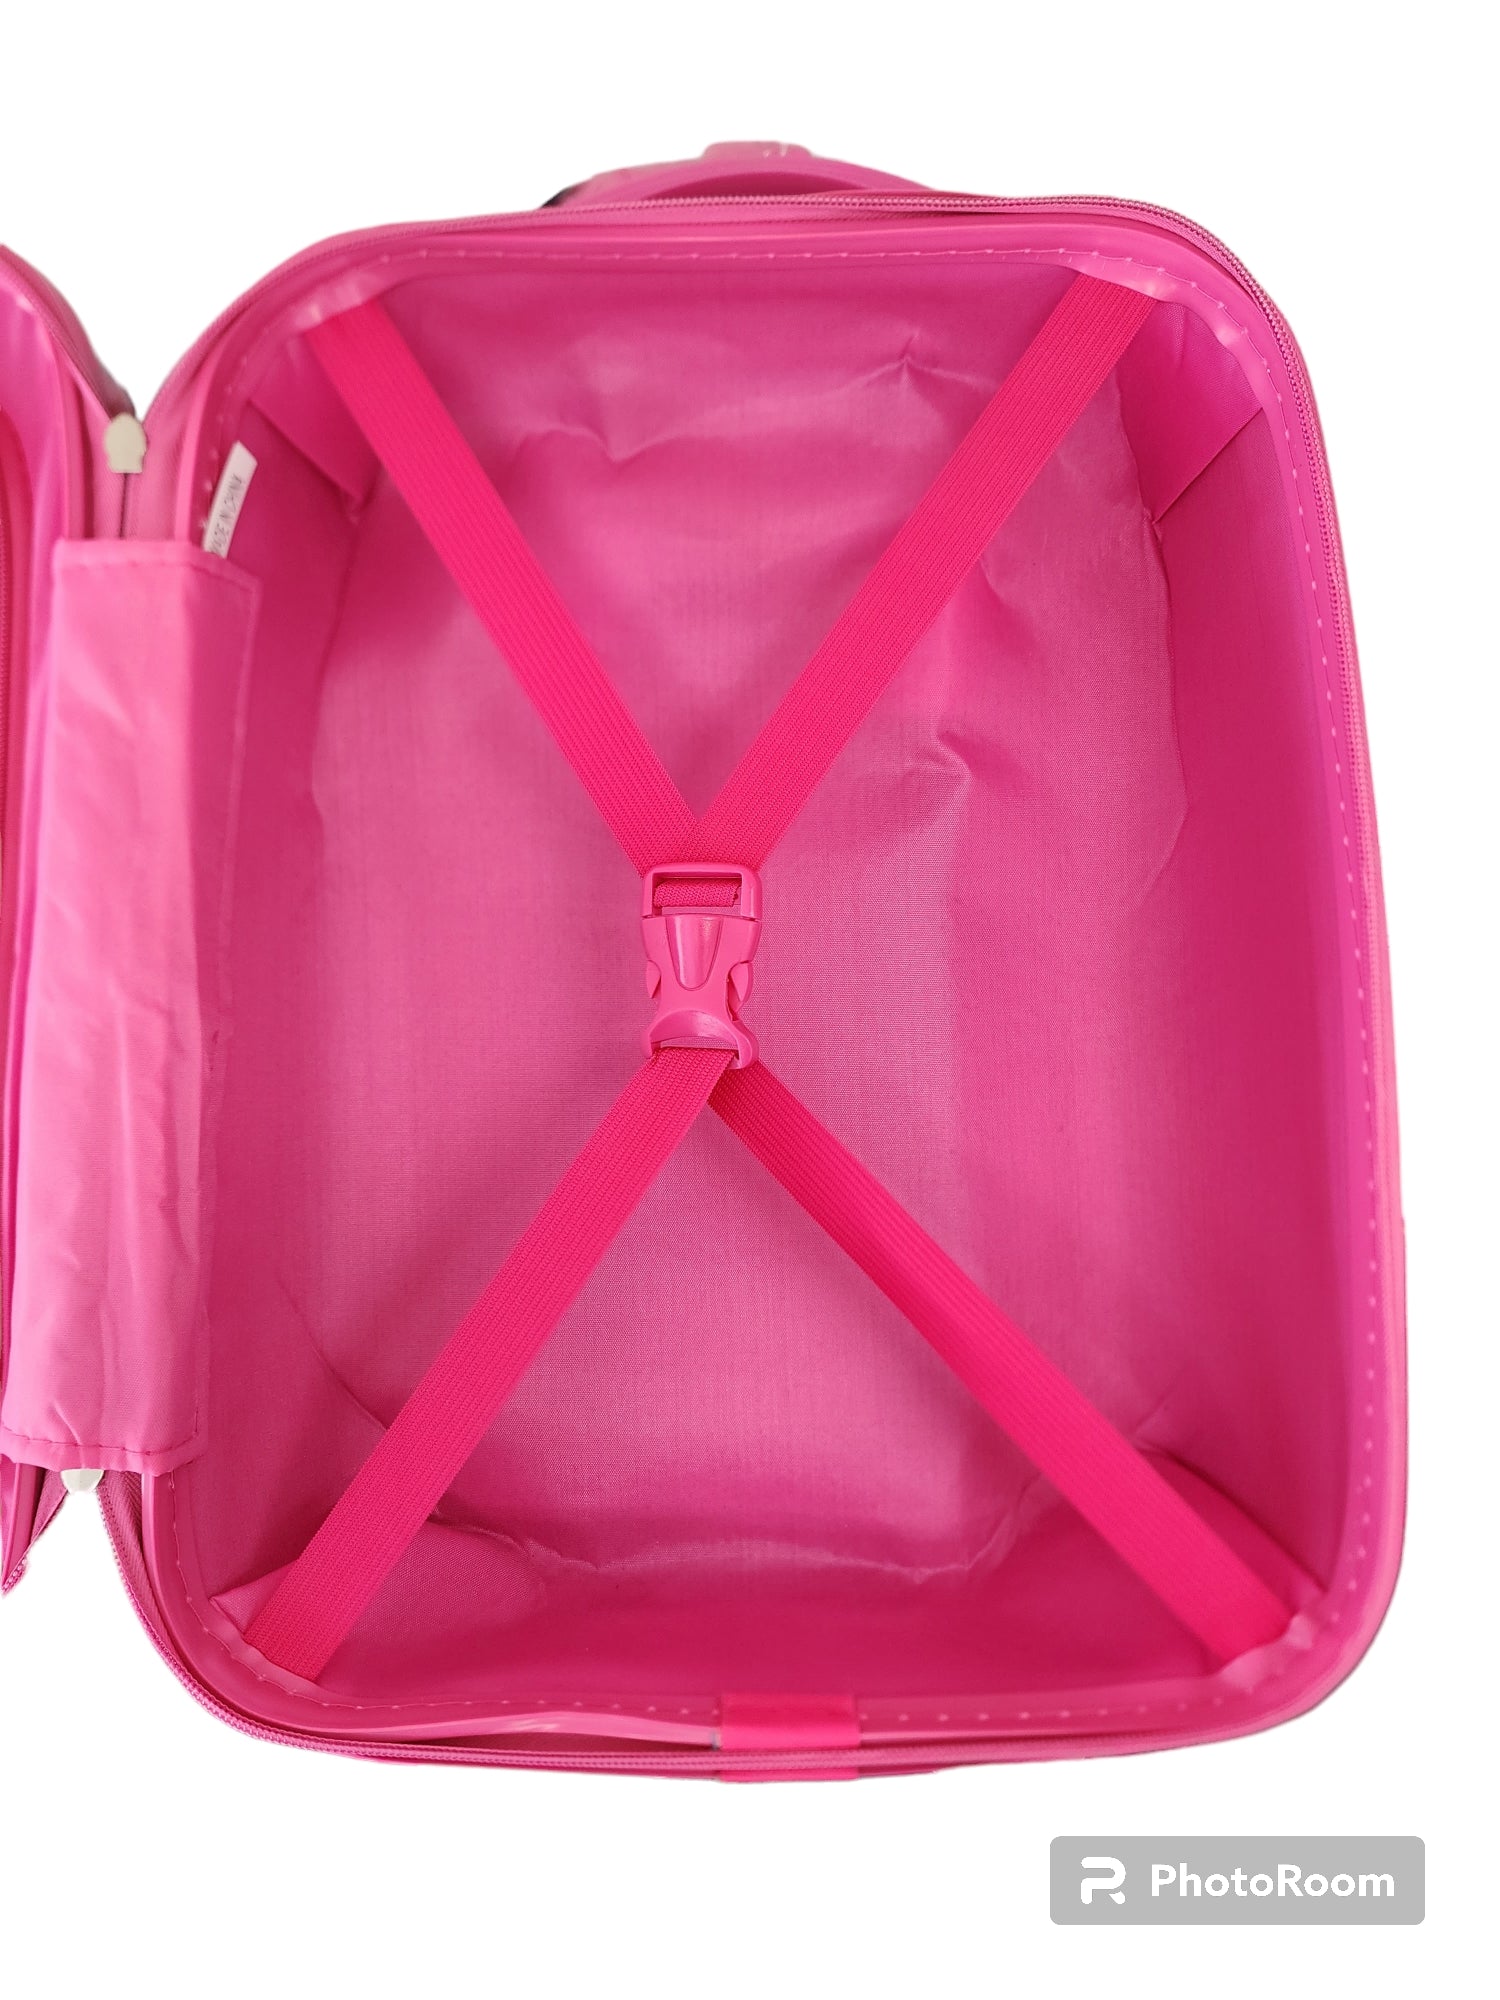 Kidz Bagz - 48cm Owl spinner suitcase - Pink-6